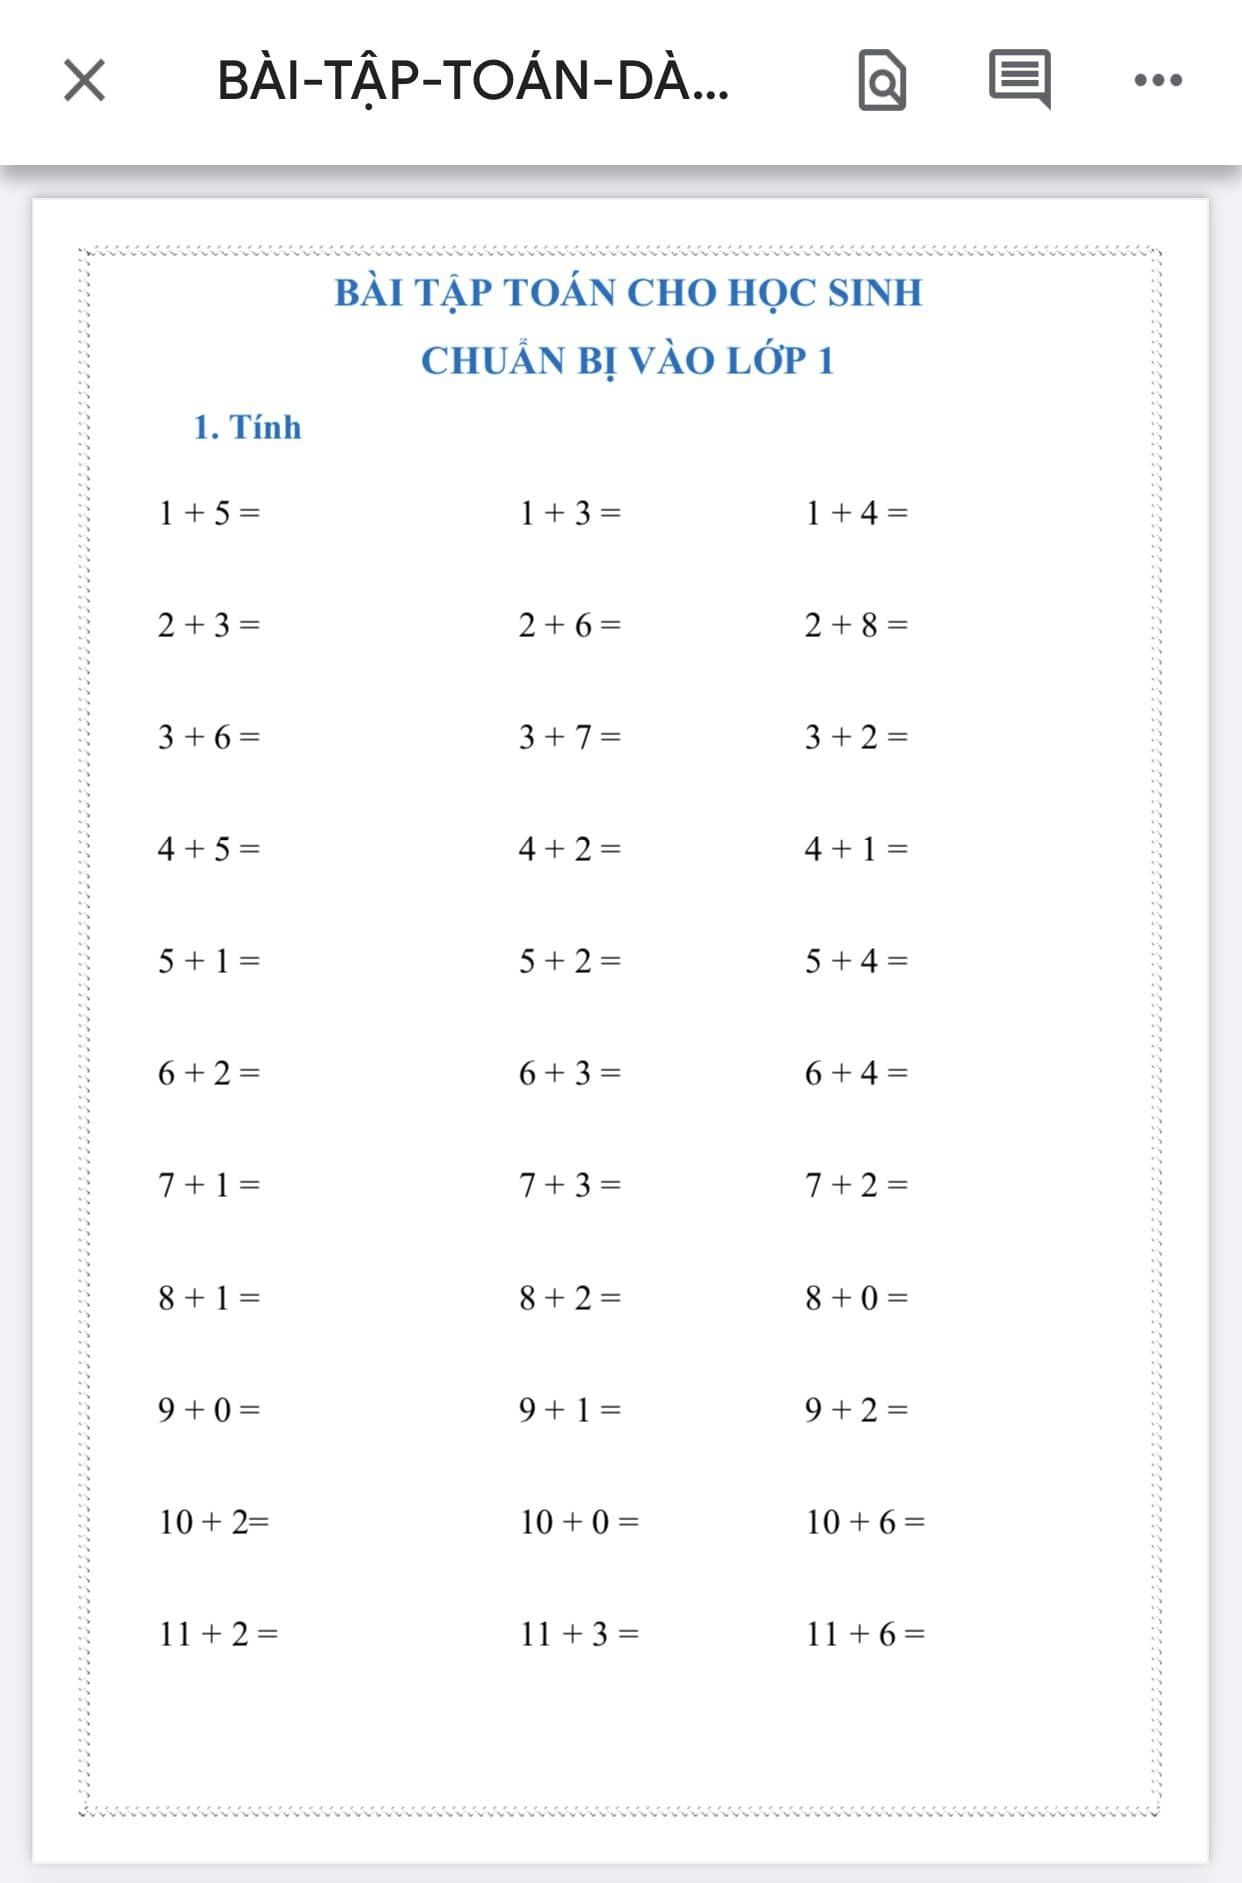 TÀI LIỆU Bài tập toán cho bé chuẩn bị vào lớp 1 PDF CÓ ĐÁP ÁN LINK DRIVE